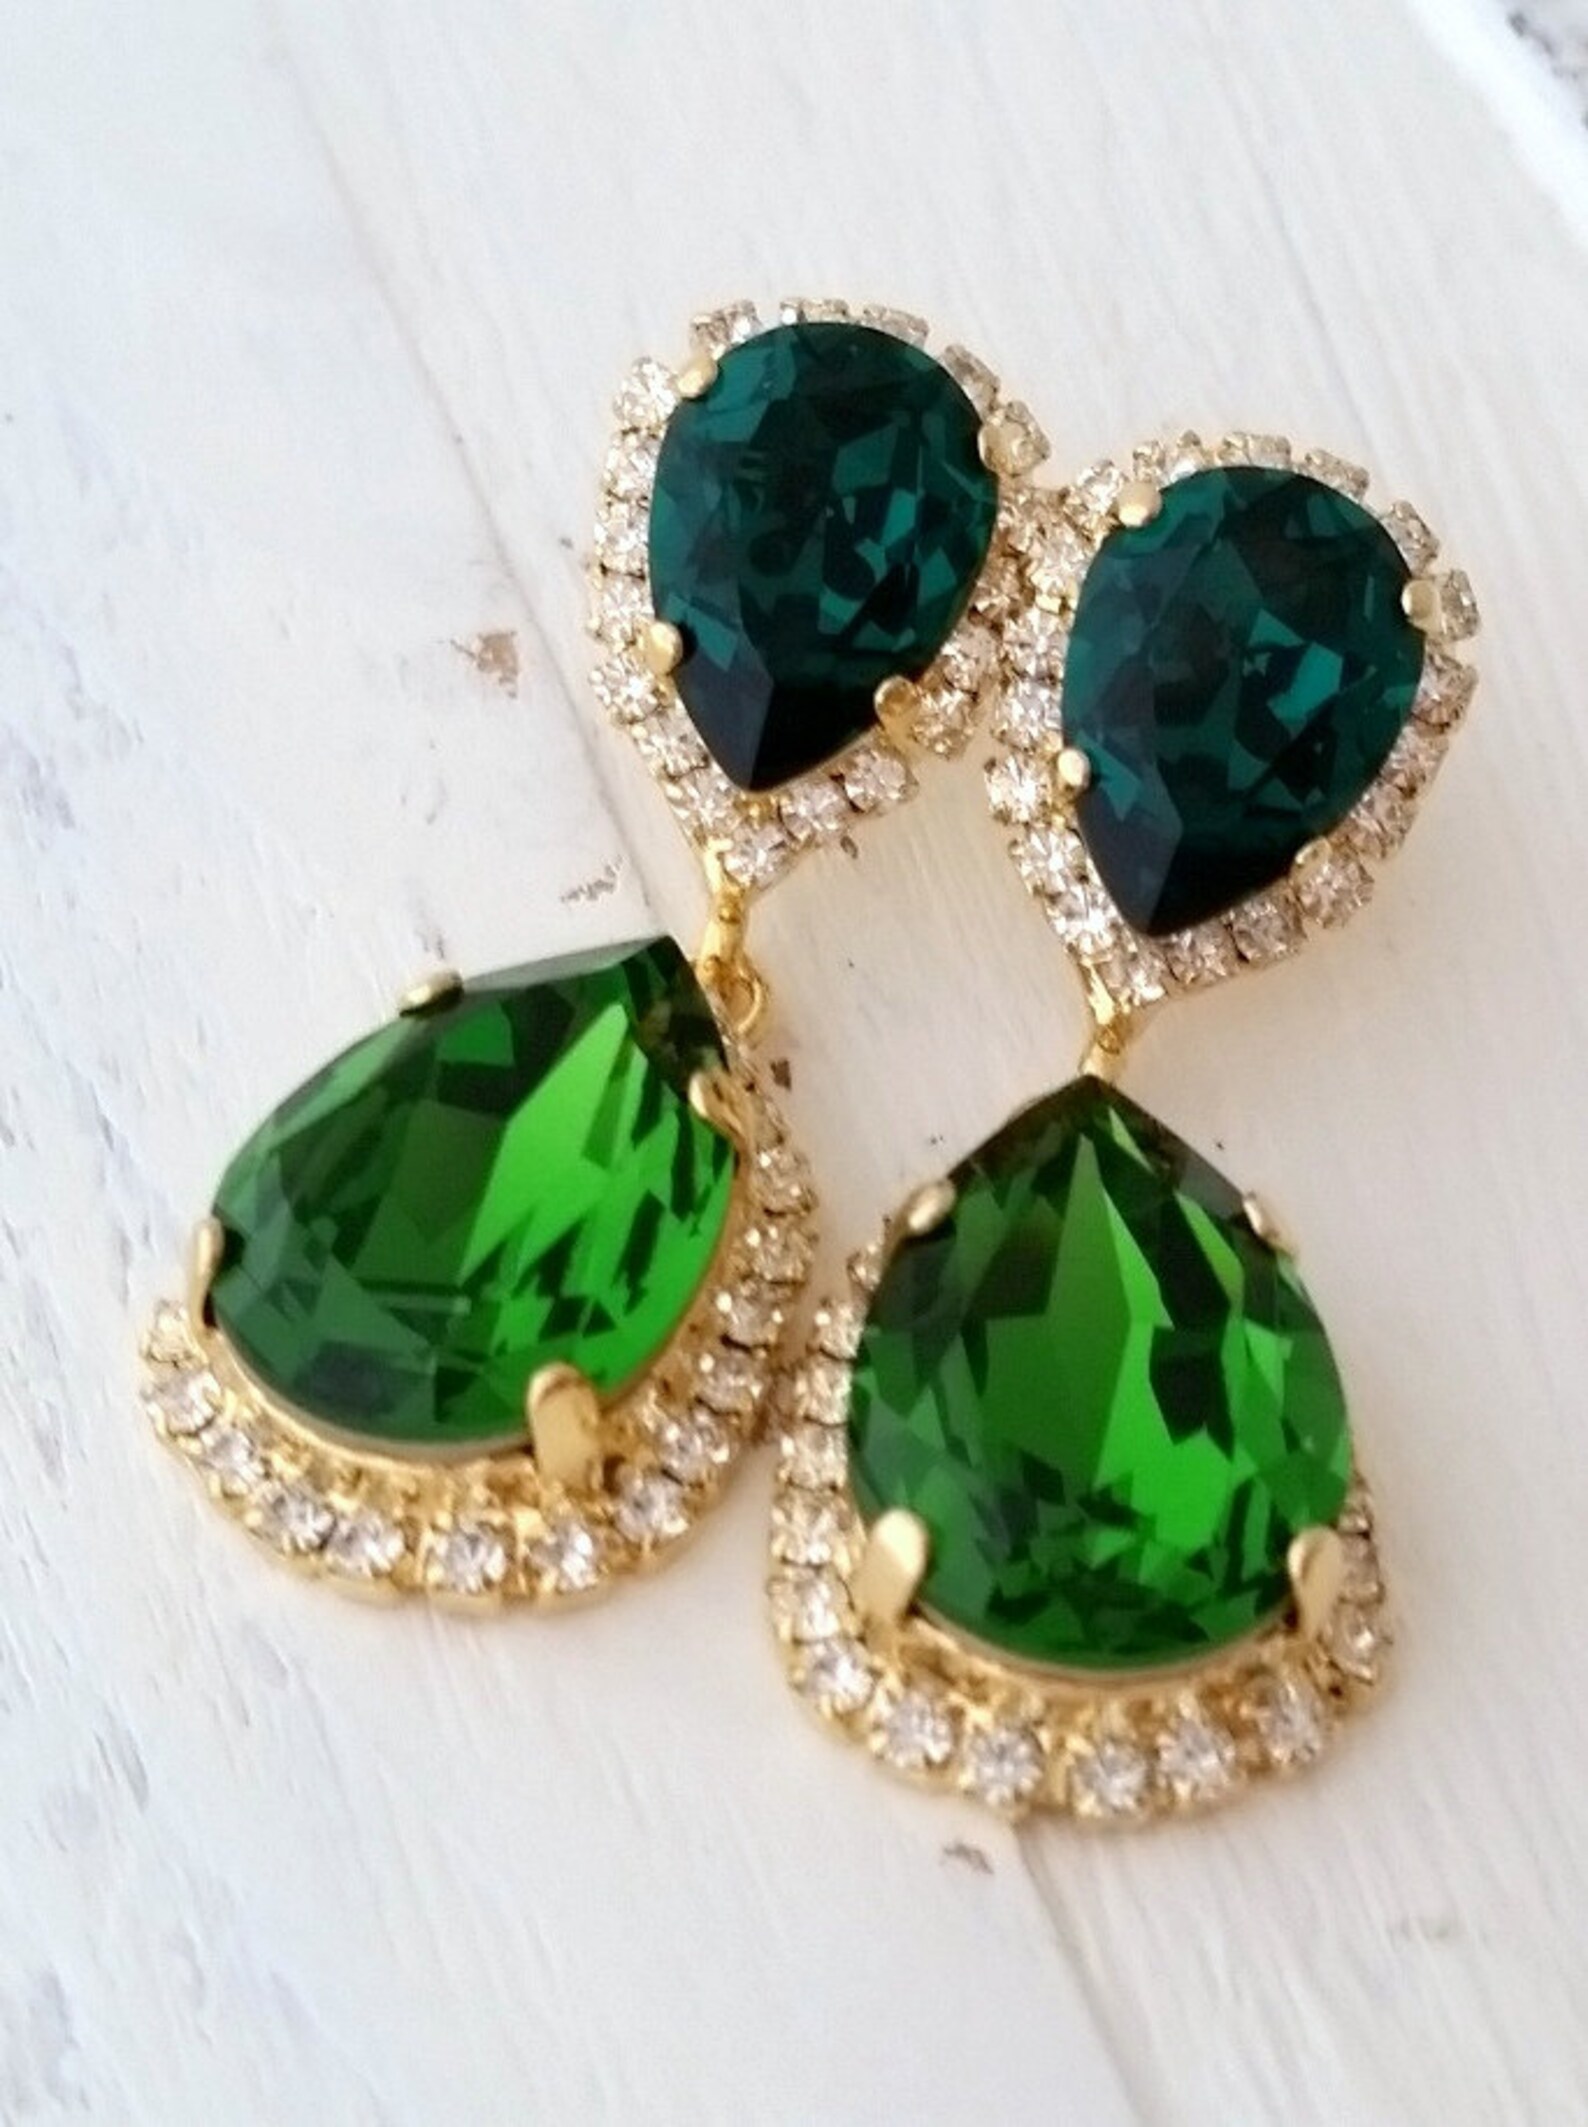 Emerald earringsEmerald green chandelier earringsemerald | Etsy